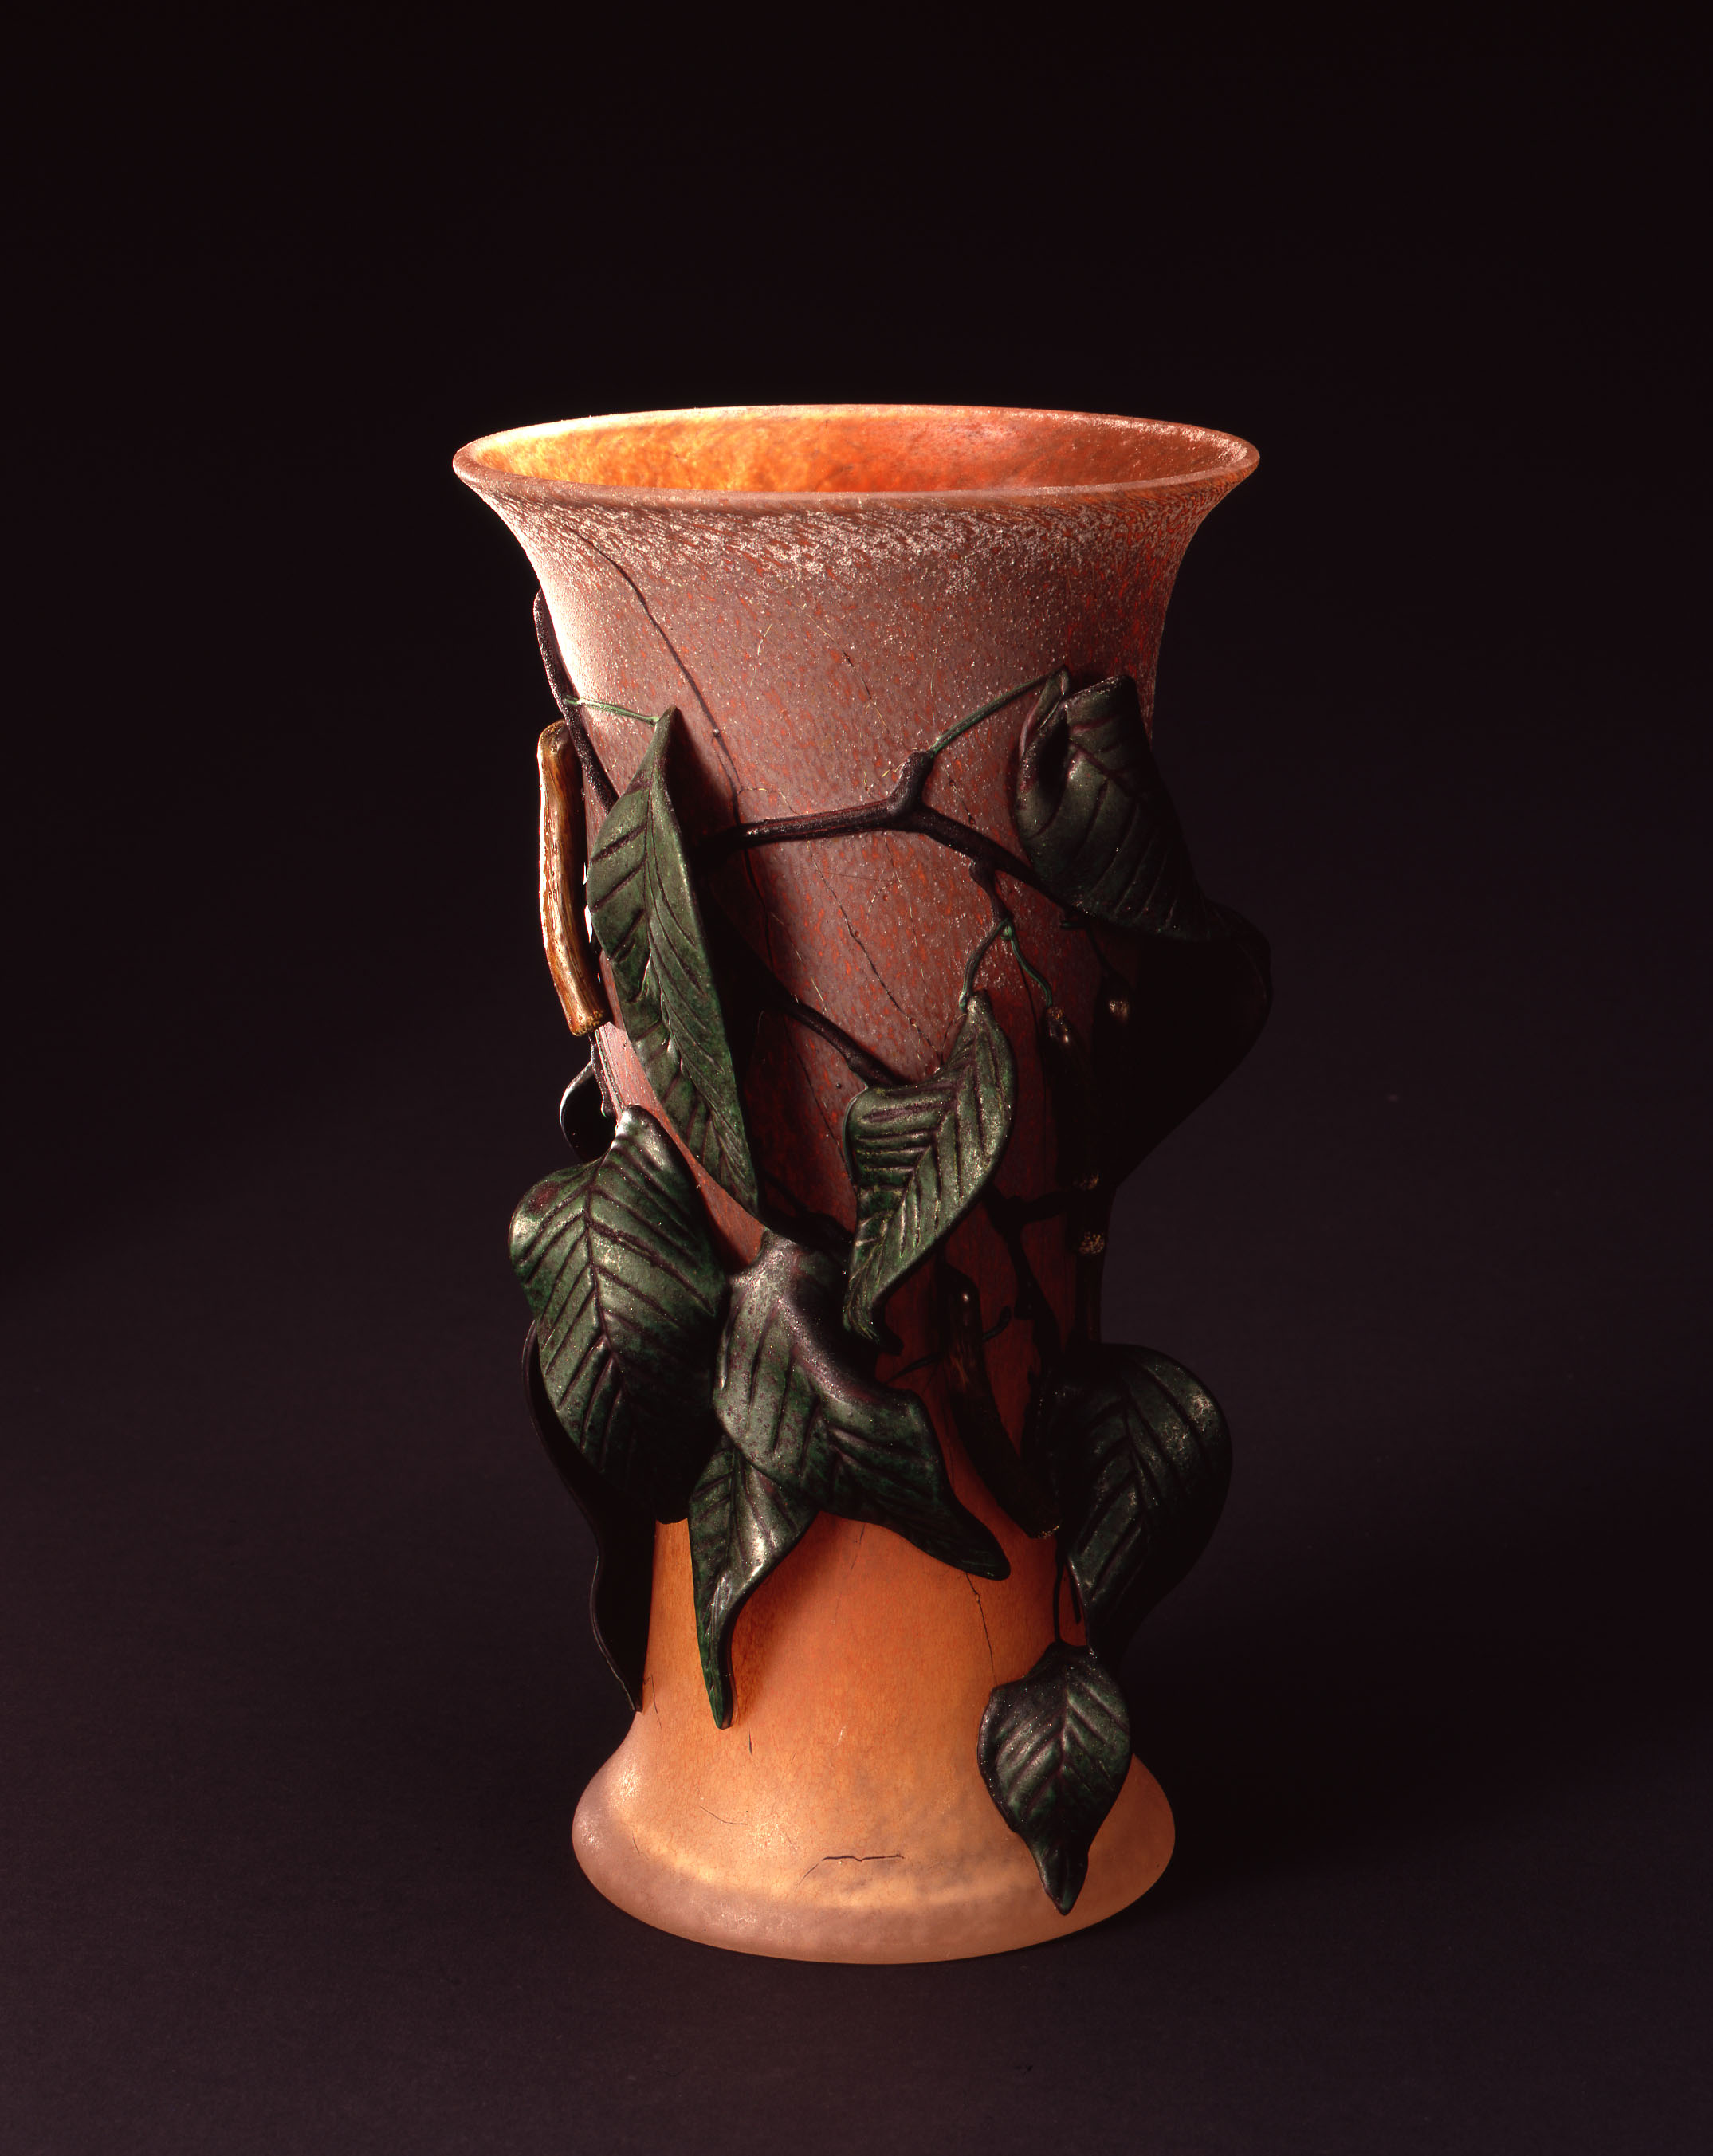  William Morris,&nbsp; Vase with Leaves and Locust Pods  &nbsp; (2004, glass, 11 3/8 x 6 1/4 x 6 1/4 inches), WM.46 